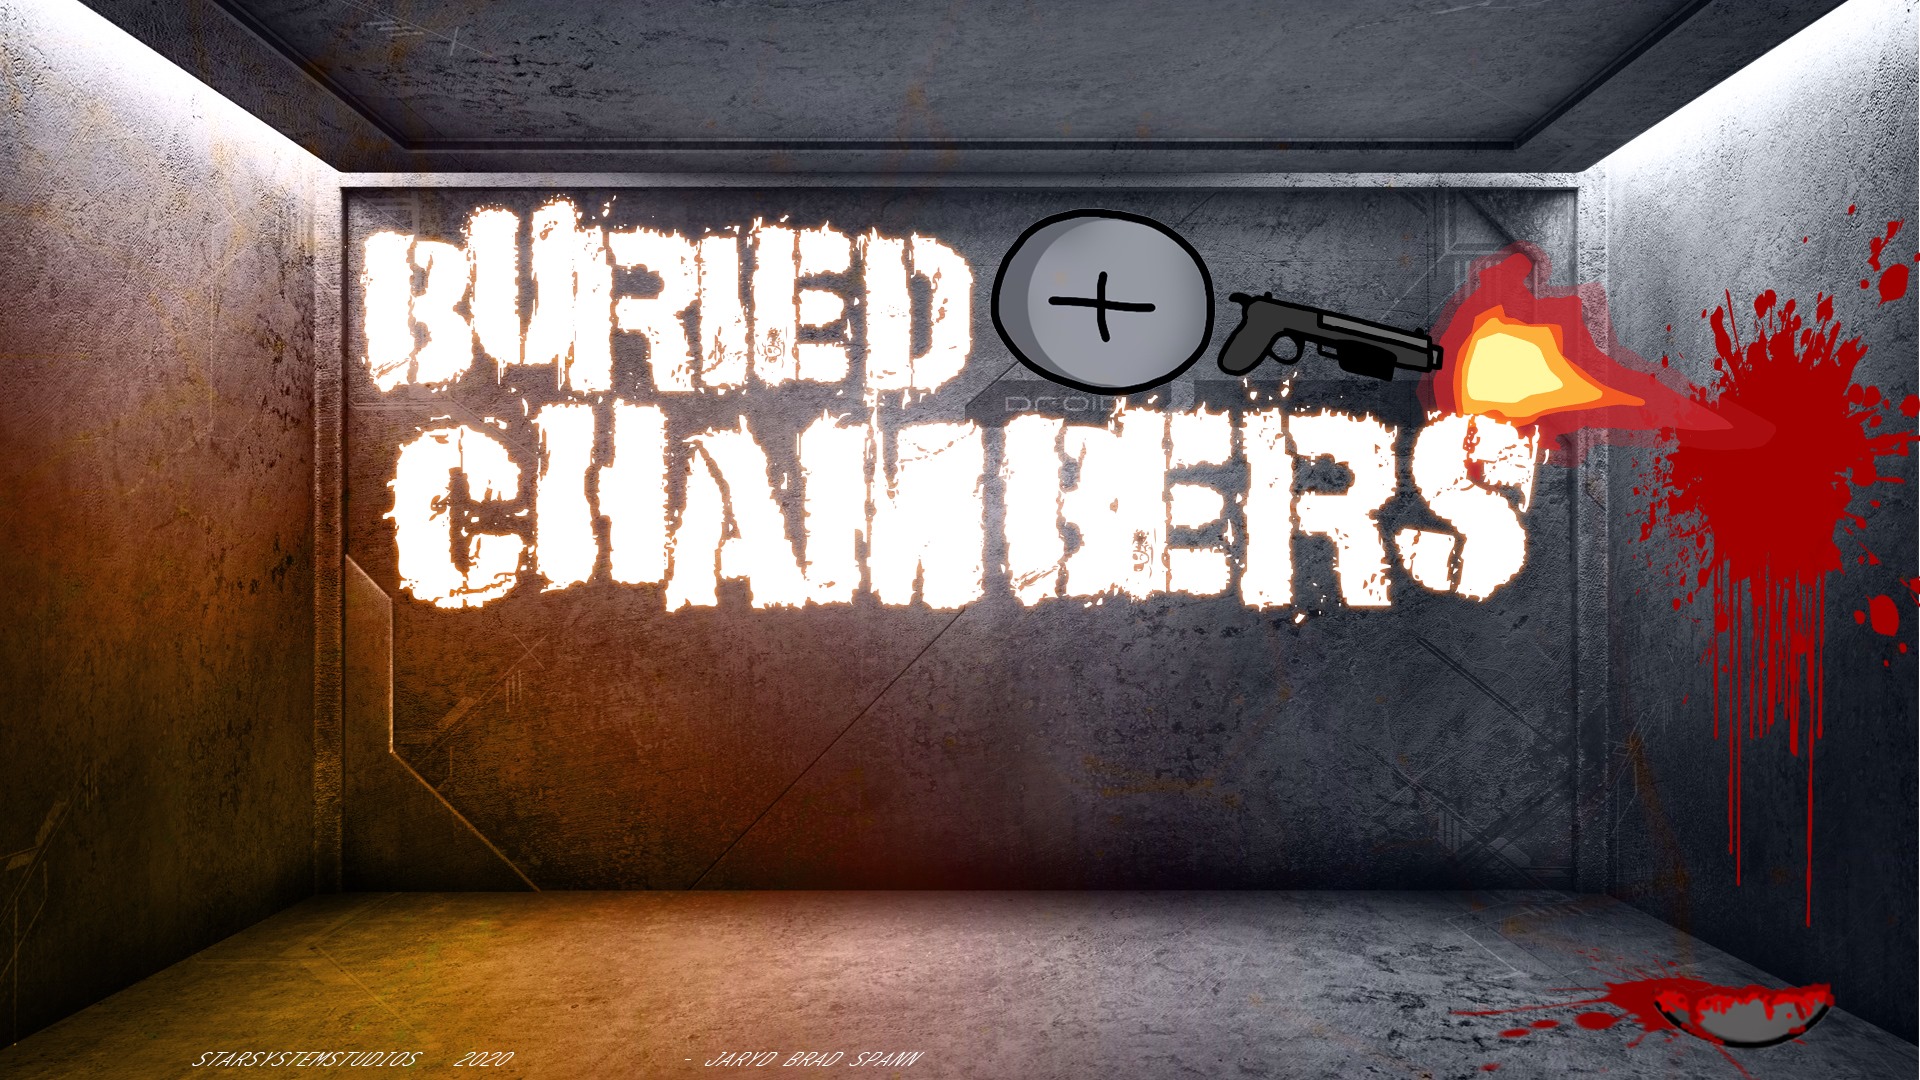 Buried Chambers